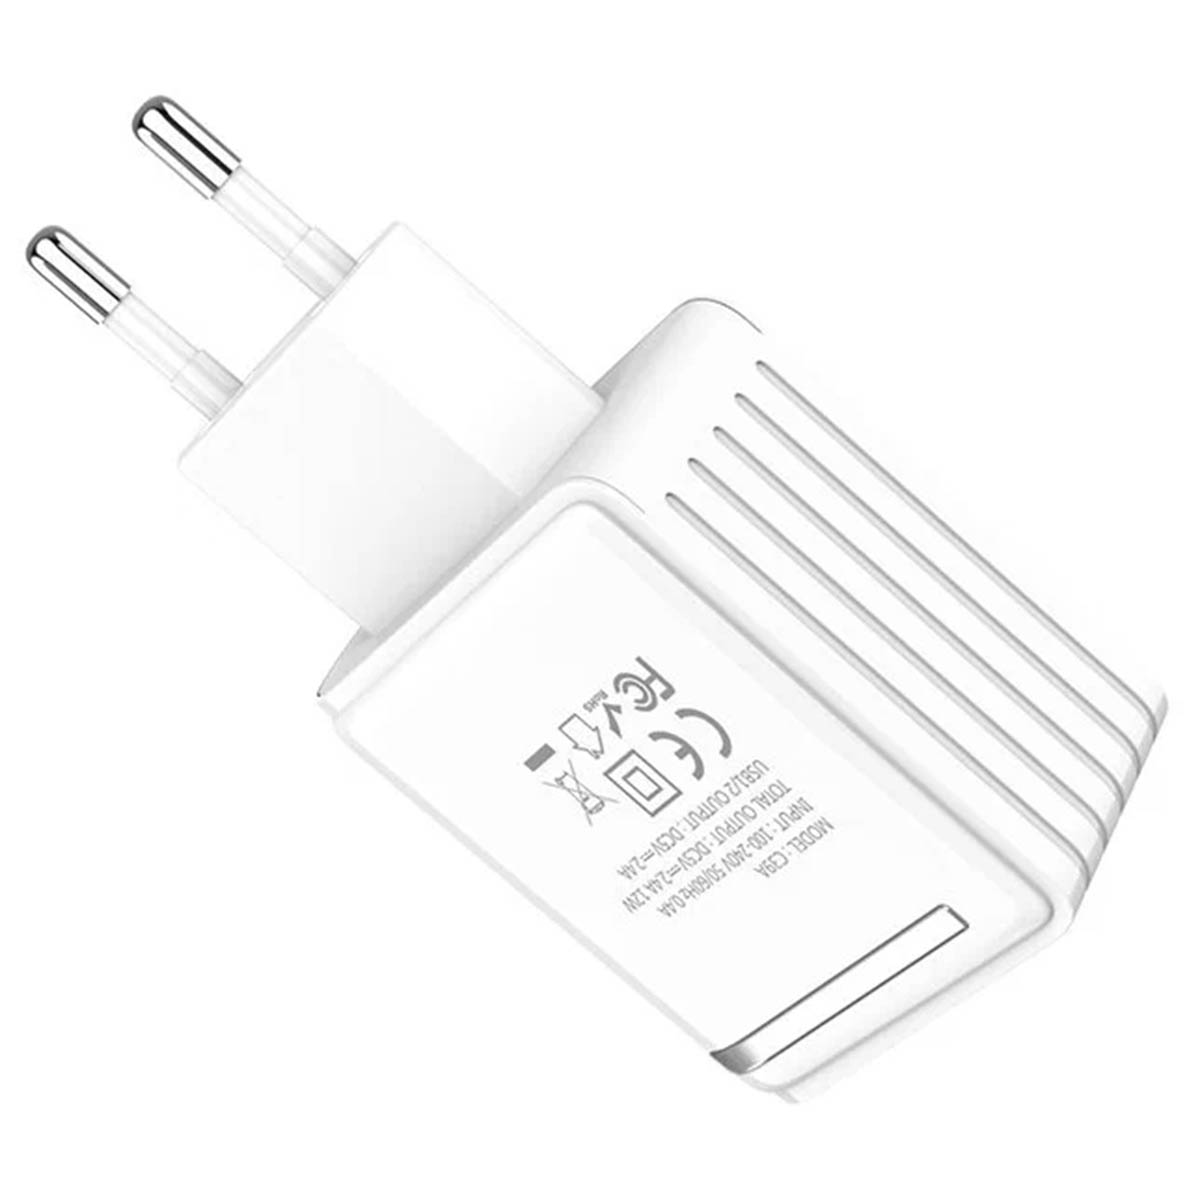 СЗУ (Сетевое зарядное устройство) HOCO C39A, 12W, 2.4A, 2 USB, Led дисплей, цвет белый